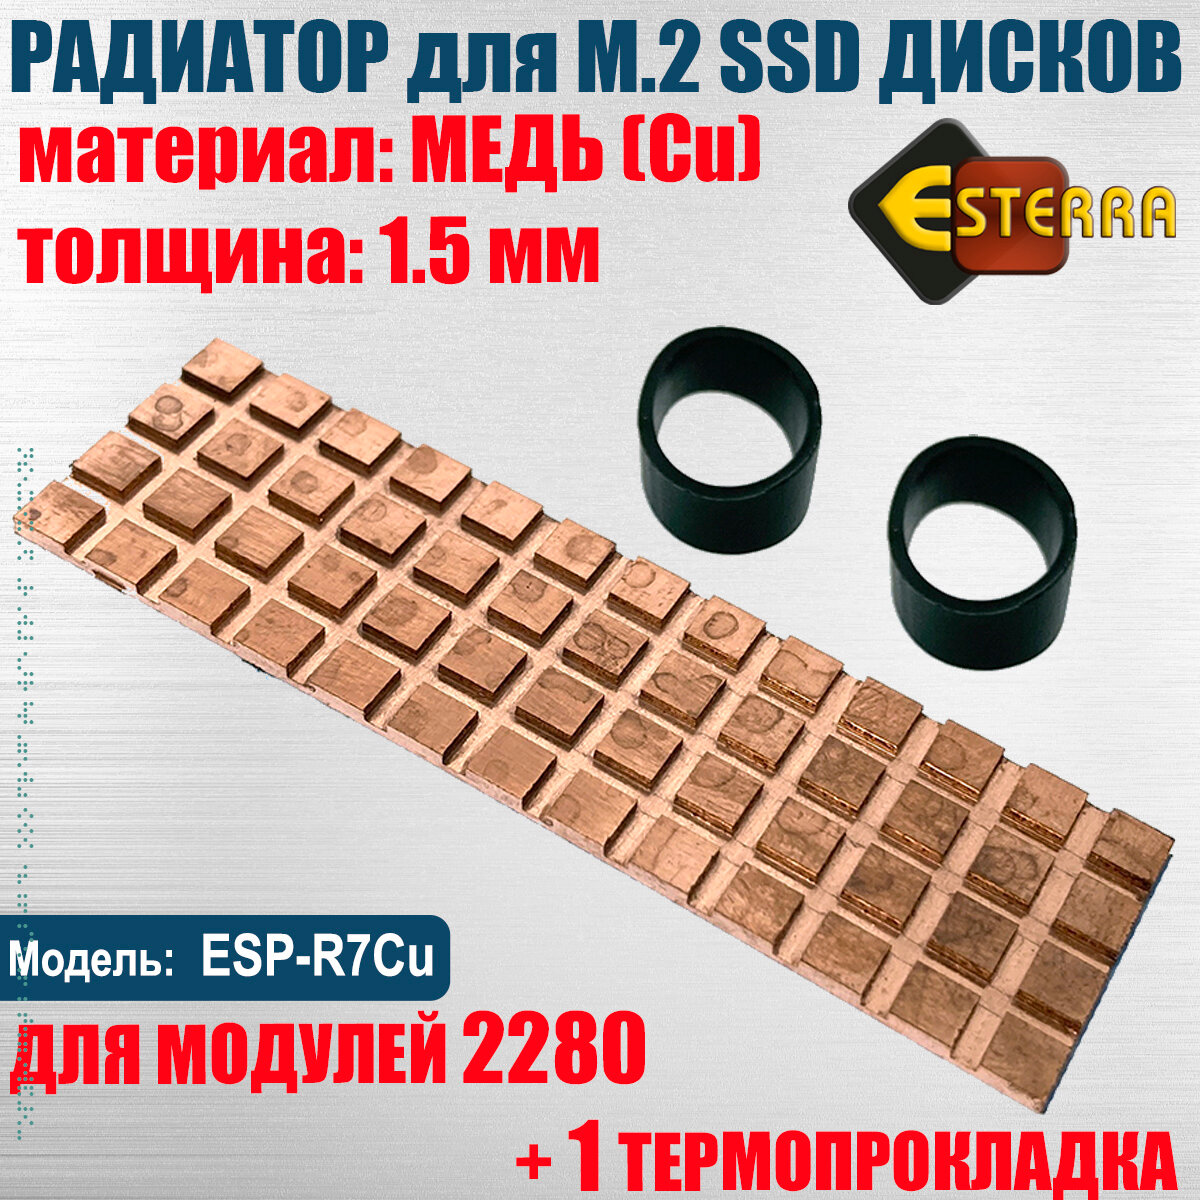 Радиатор для SSD M.2 2280 медь толщина 1.5мм, Модель ESP-R7Cu